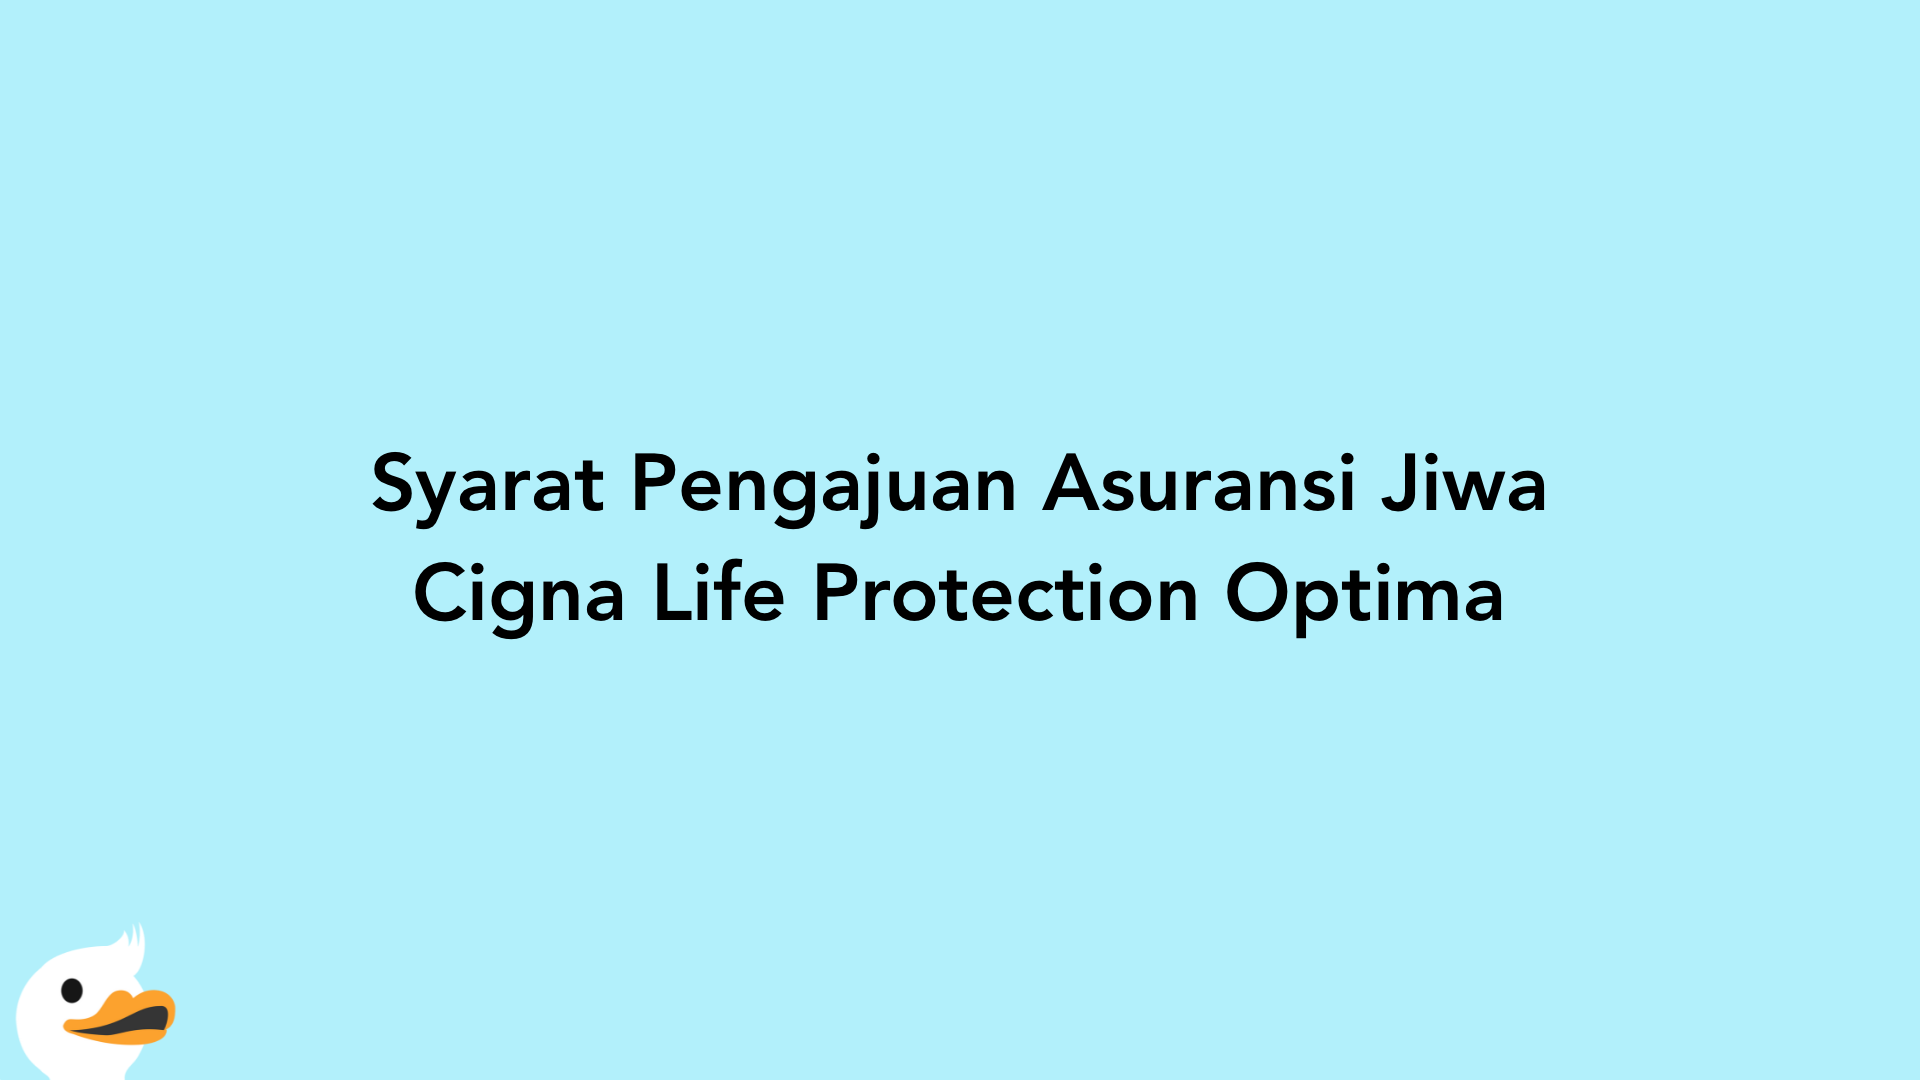 Syarat Pengajuan Asuransi Jiwa Cigna Life Protection Optima